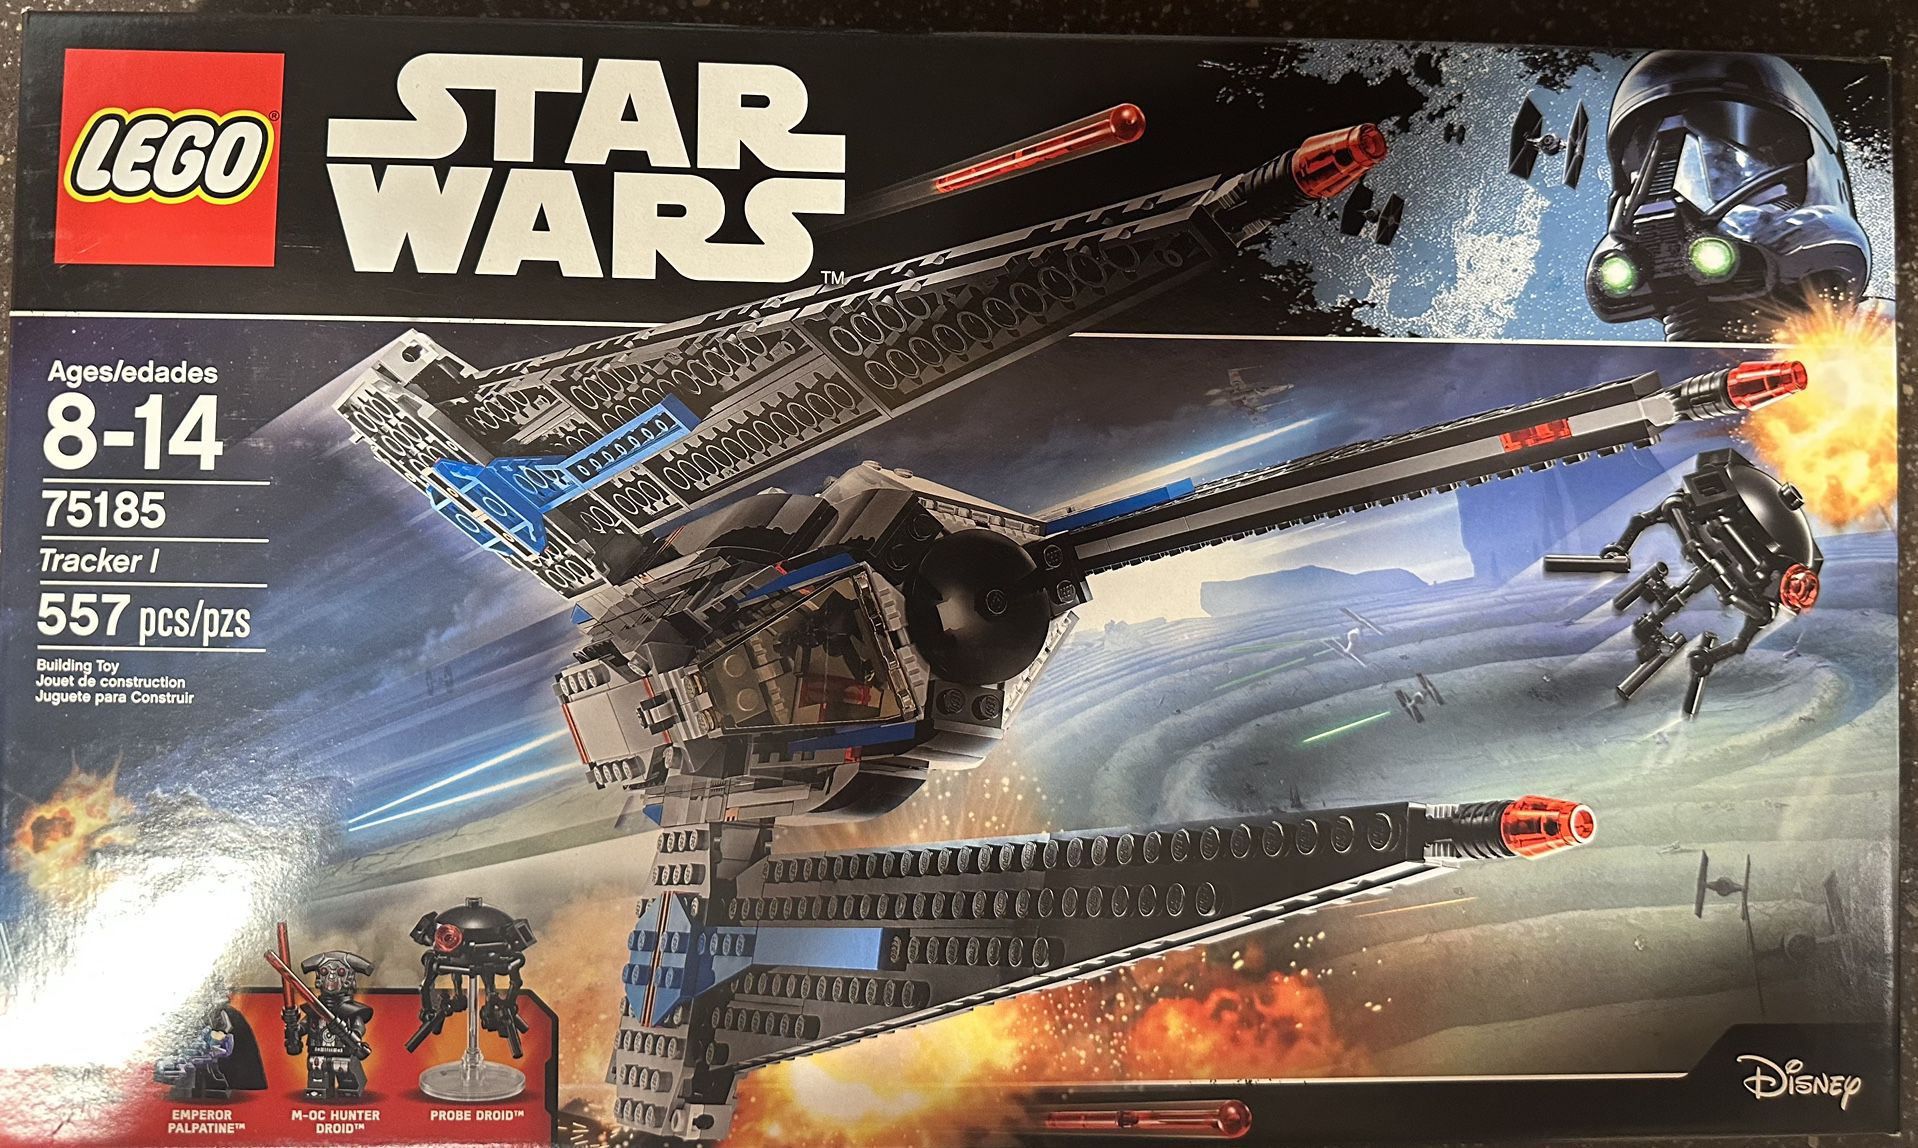 LEGO Star Wars 75185 Tracker 1 Sale in Pembroke Pines, FL - OfferUp